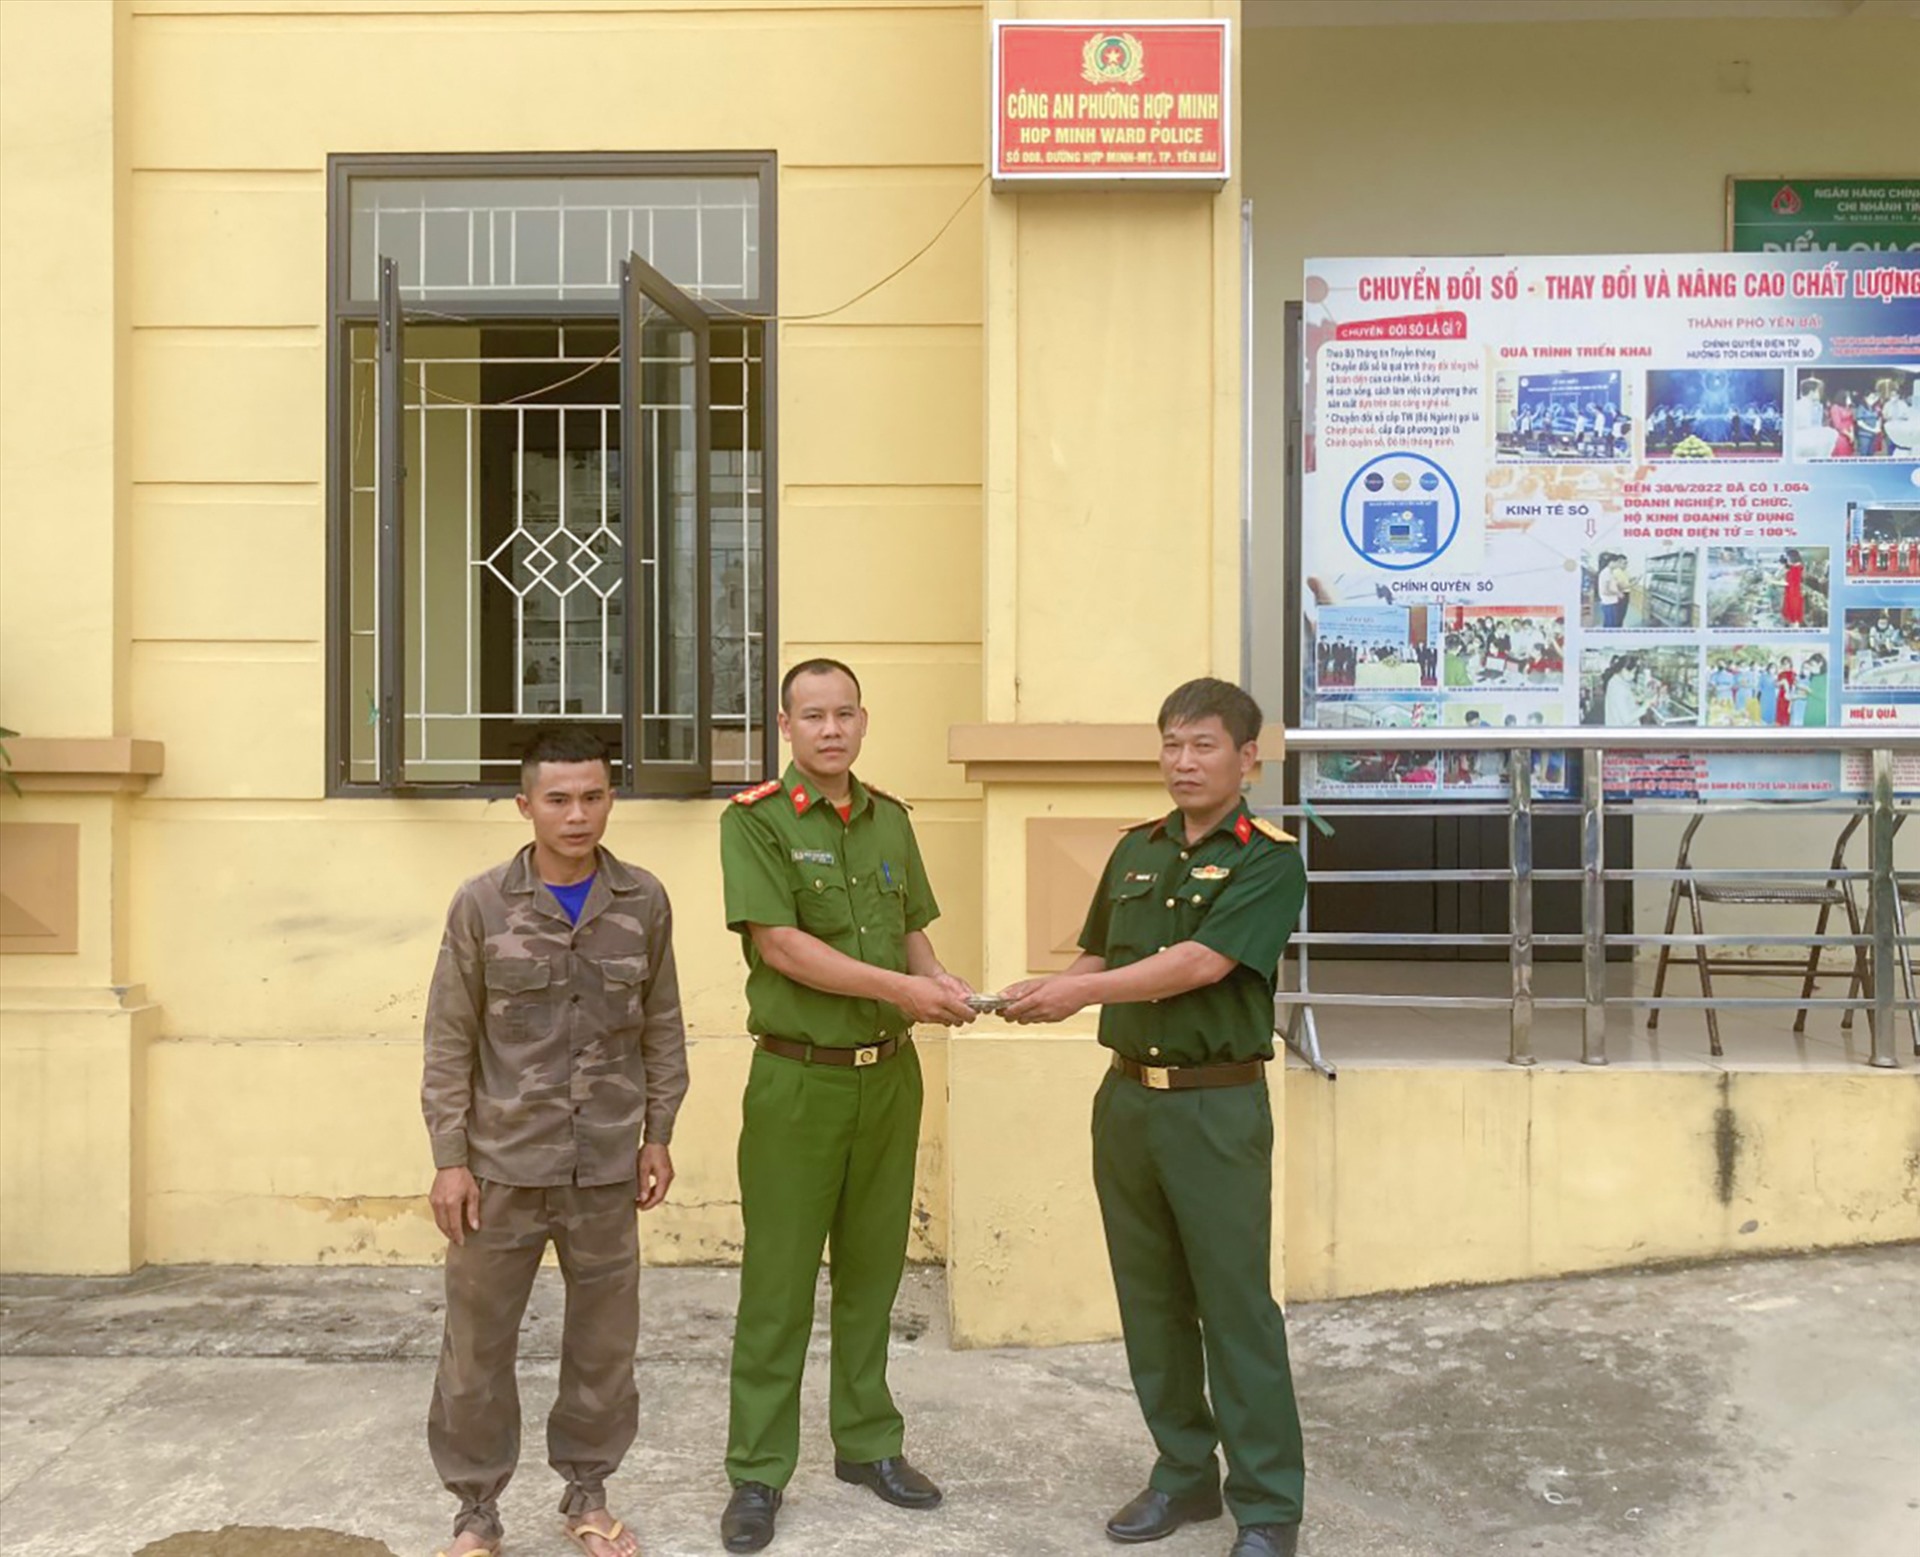 Quản giáo Trại tạm giam Quân khu 2 cùng đại diện Công an phường Hợp Minh trao lại tài sản cho anh Hoàng Văn Vinh (người ngoài cùng bên trái). Ảnh: Bảo Nguyên